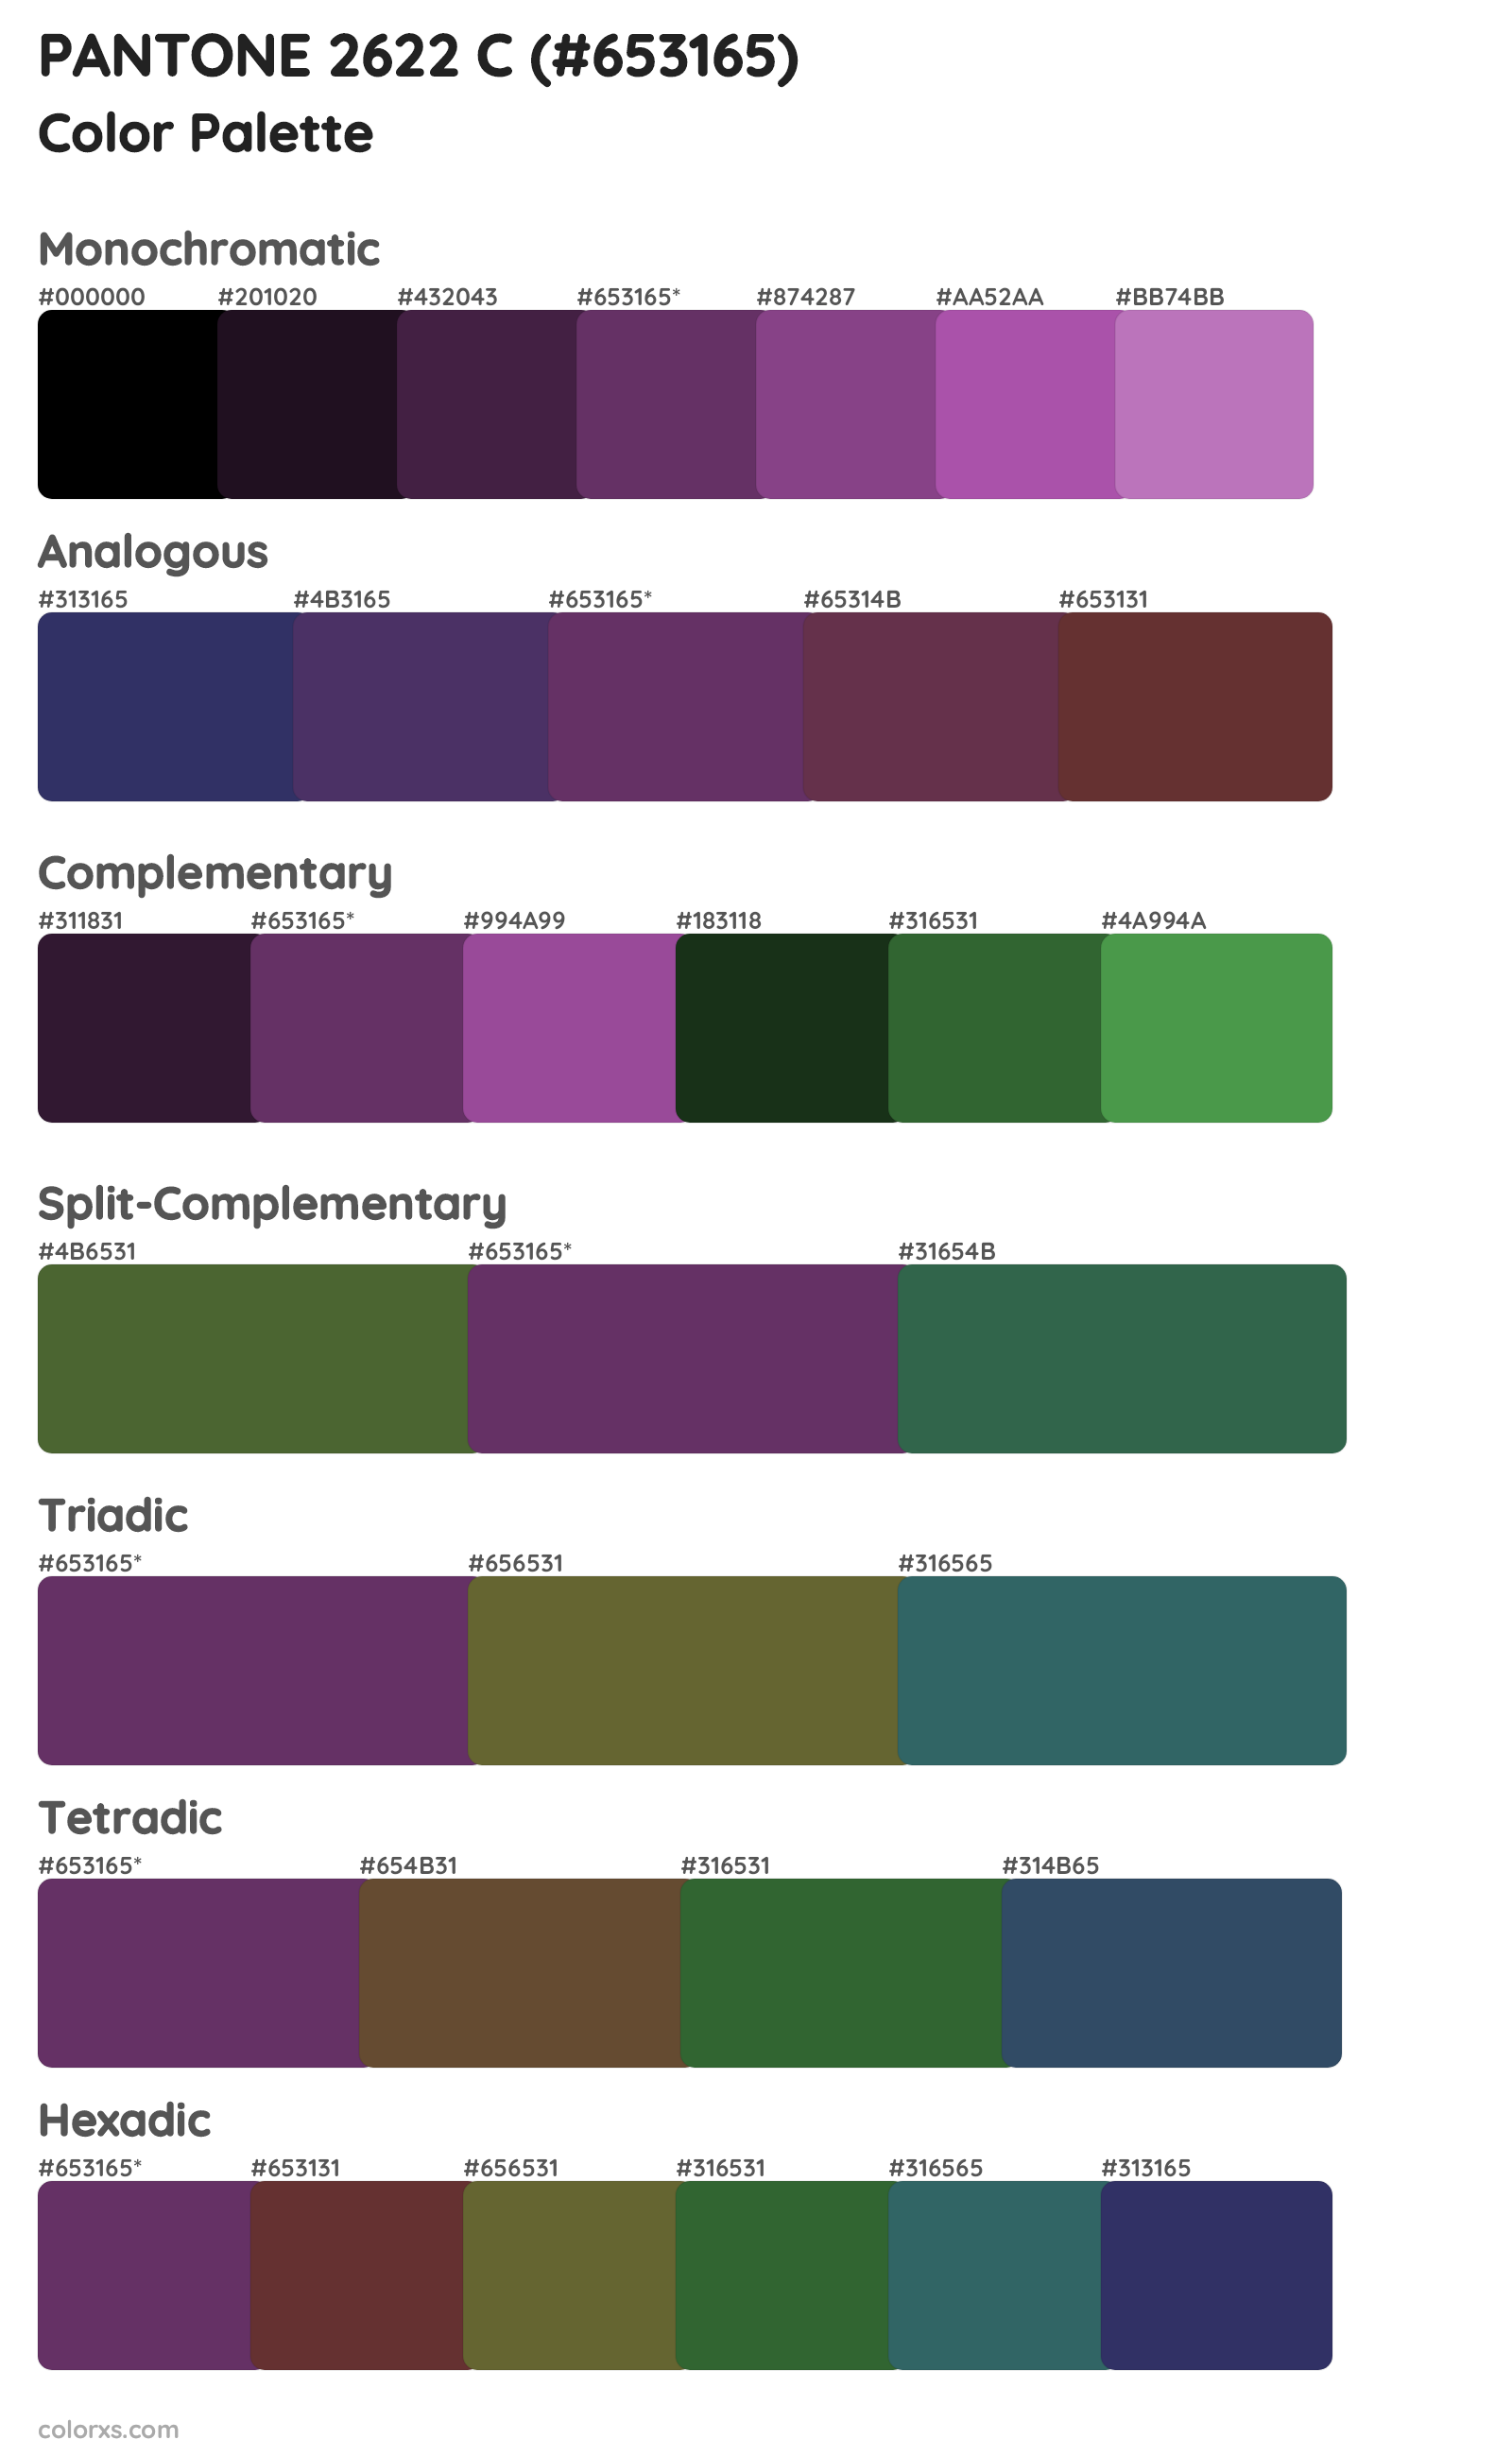 PANTONE 2622 C Color Scheme Palettes